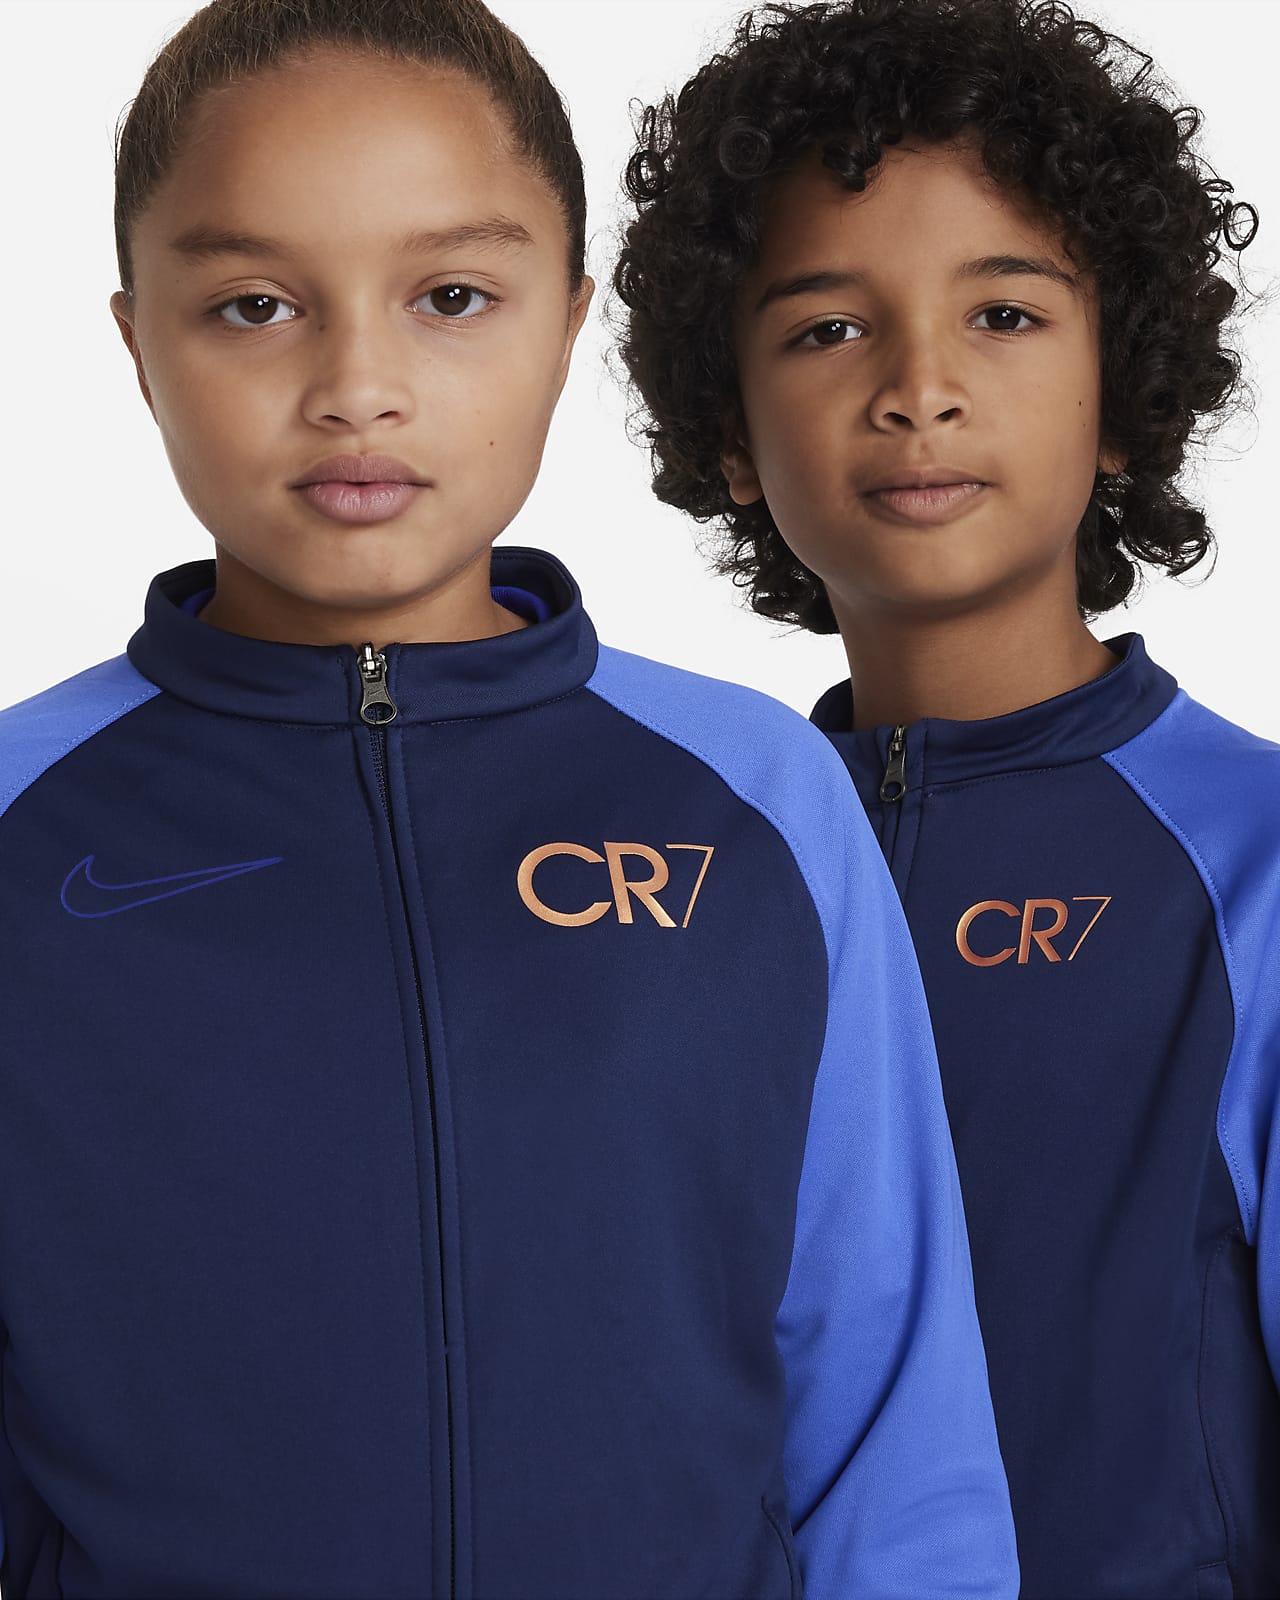 CR7 Chándal de - Niño/a. Nike